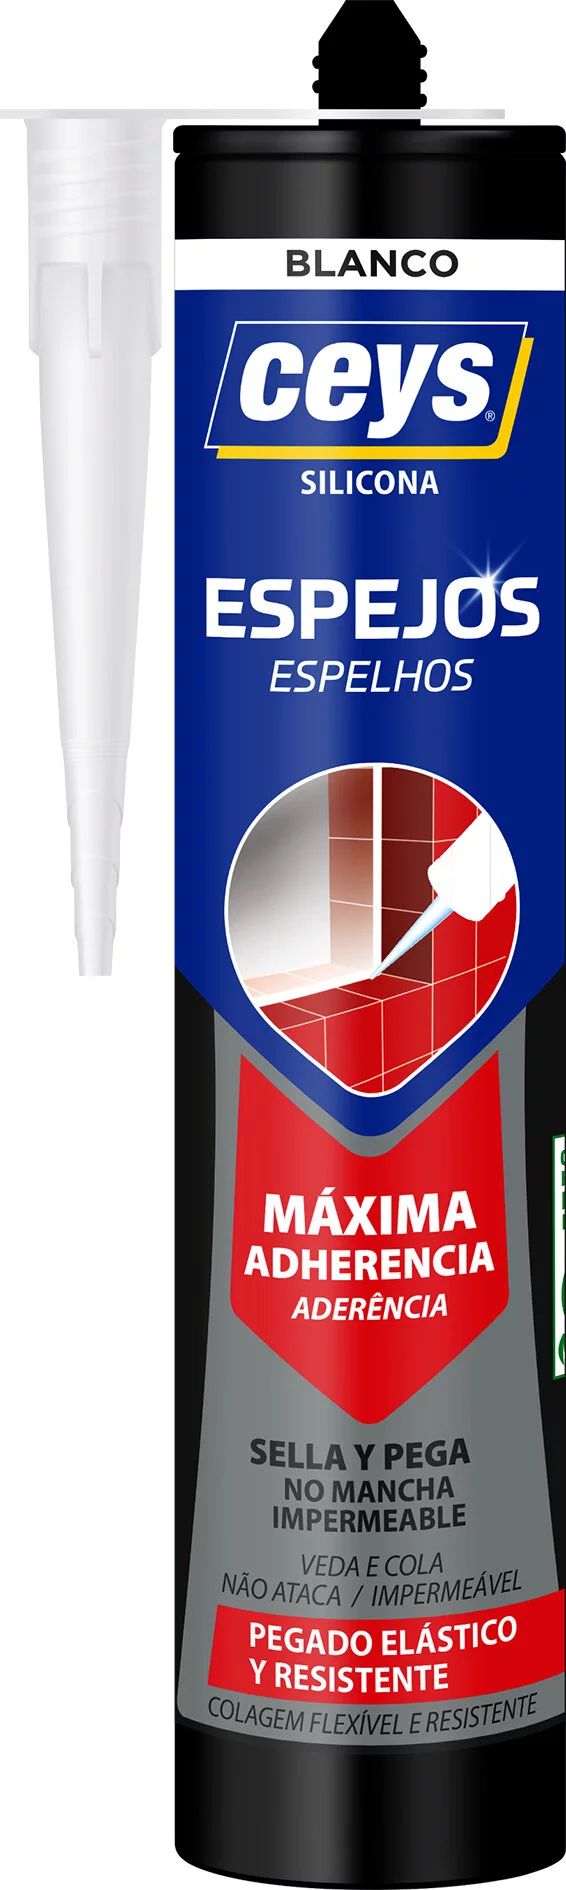 Ceys Masilla refractaria para sellar juntas de estufas, hornos, chimeneas y  puertas cortafuegos de , ceys 310 ml